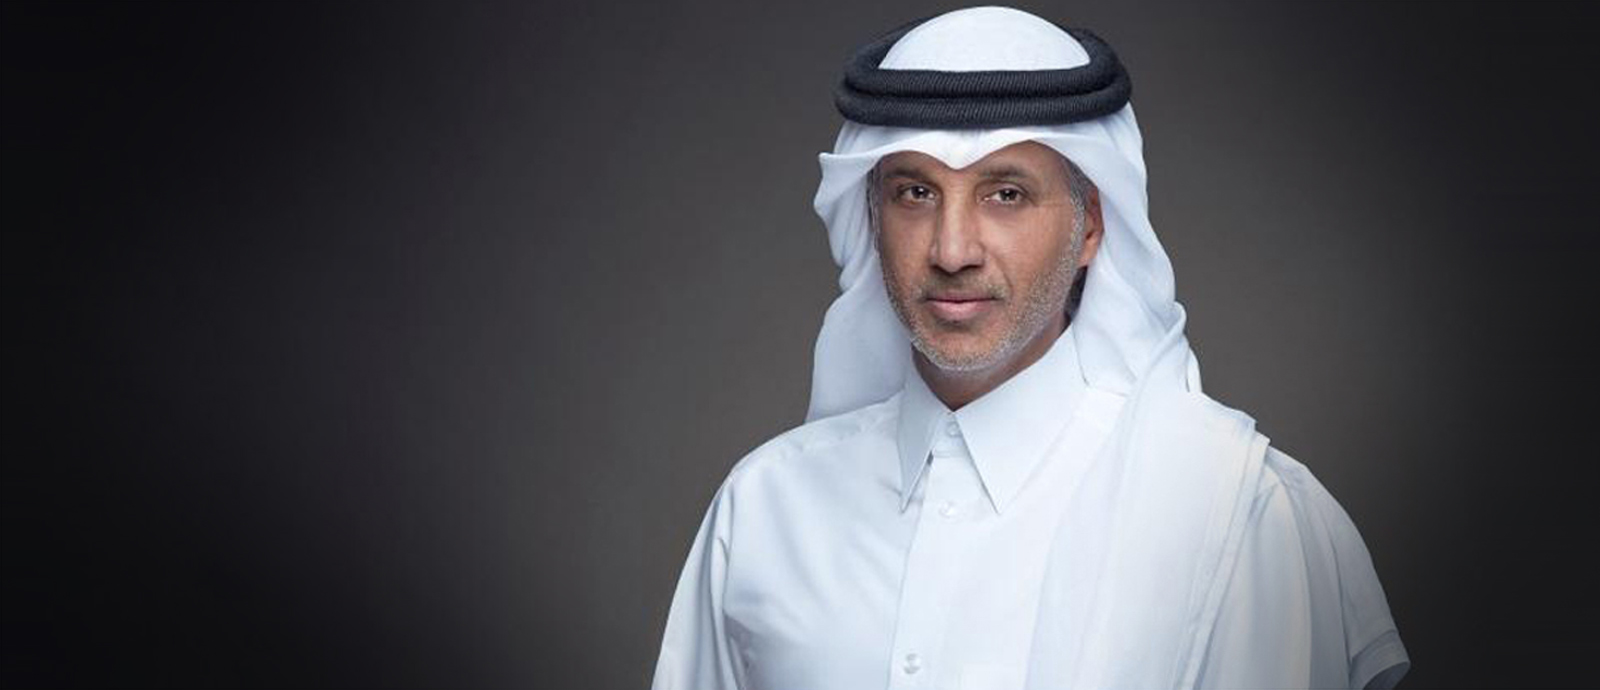 سعادة الشيخ حمد بن خليفة بن احمد آل ثاني رئيس الاتحاد القطري لكرة القدم